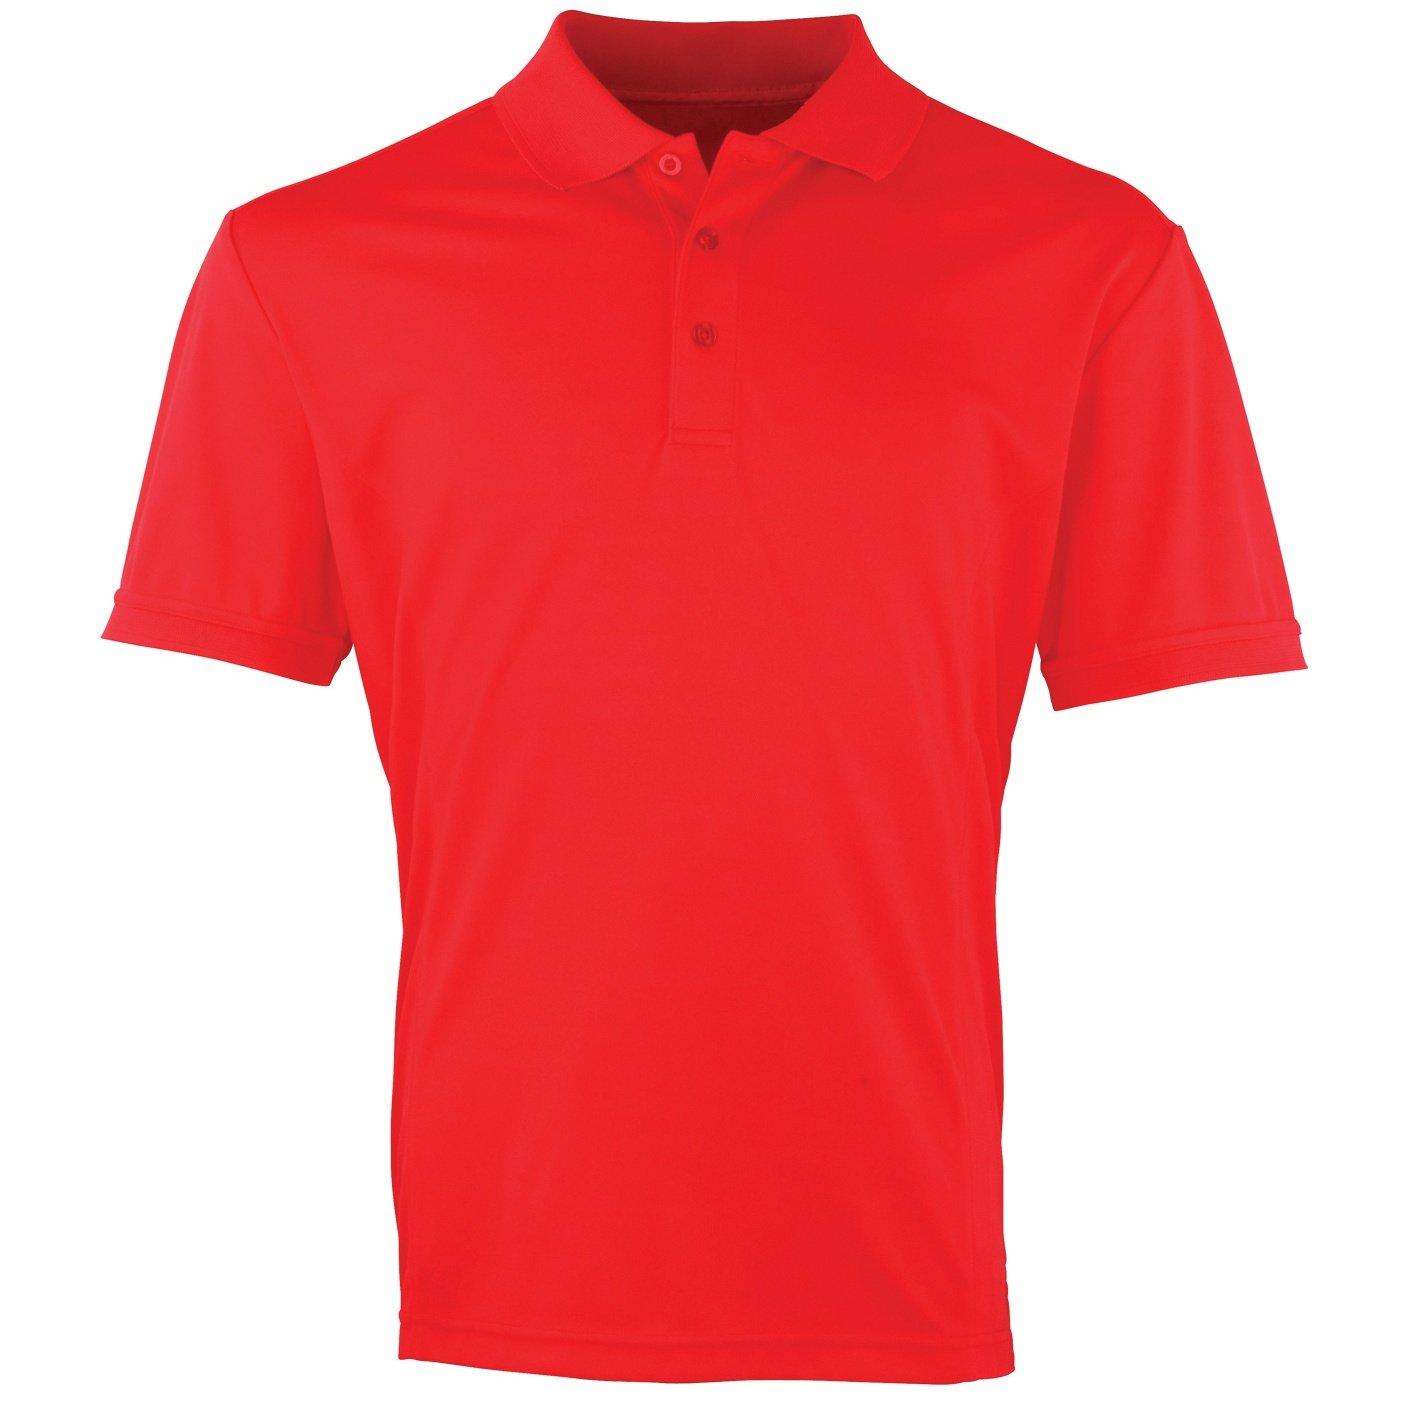 Coolchecker Pique Kurzarm Polo Tshirt Herren Rot XL von PREMIER